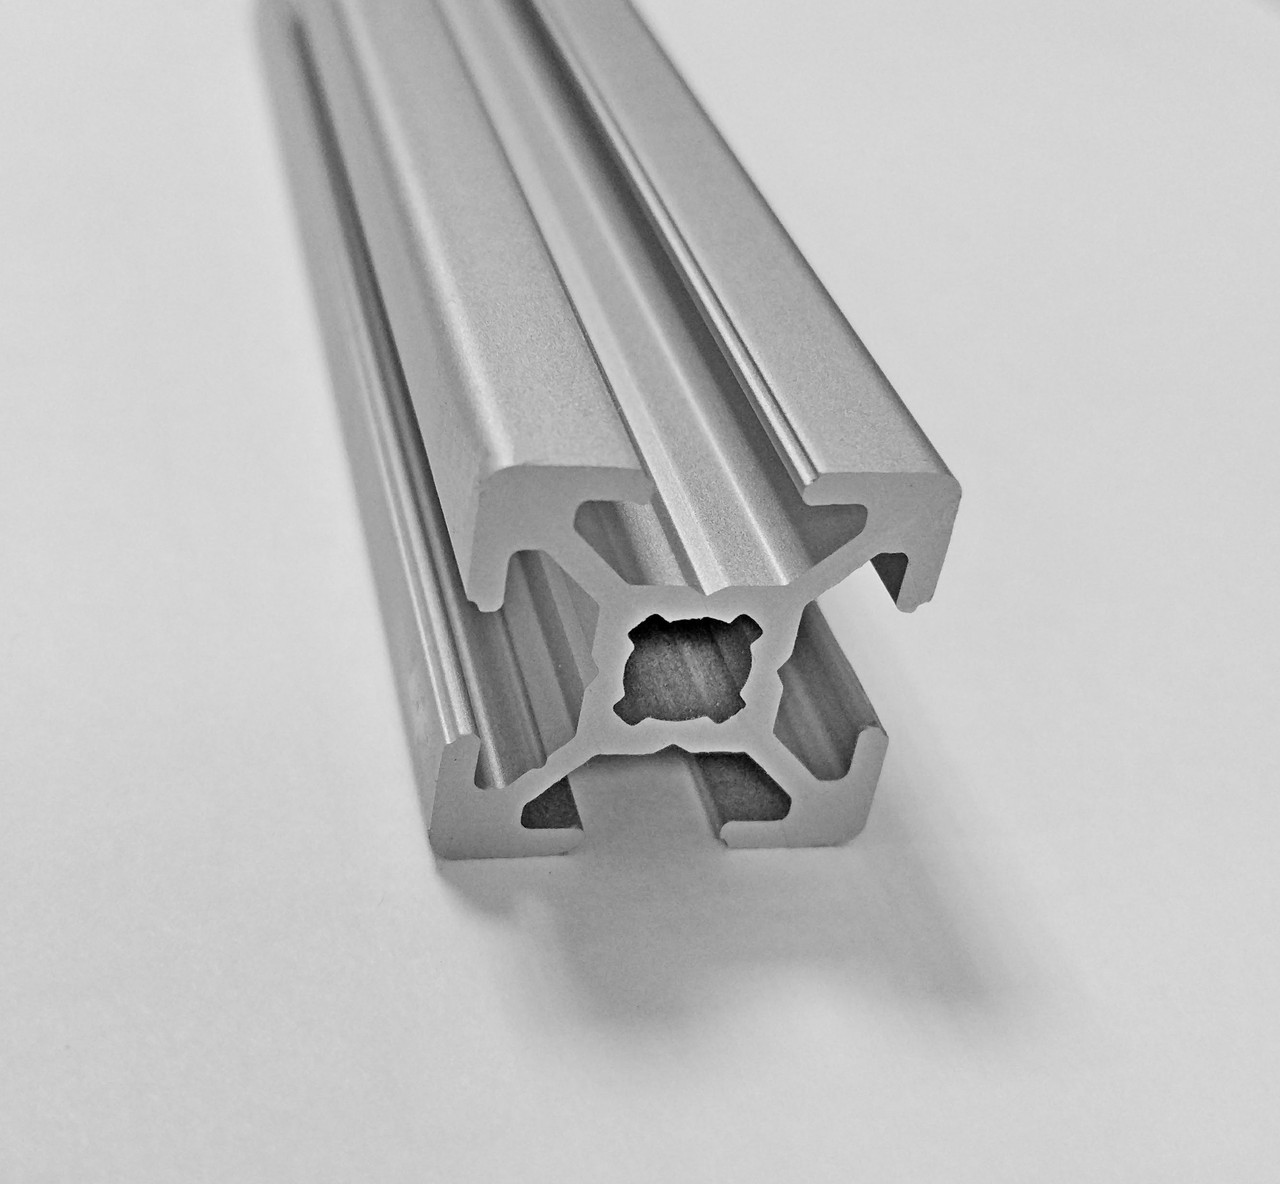 Алюминиевый профиль для направляющих фрезерного стола